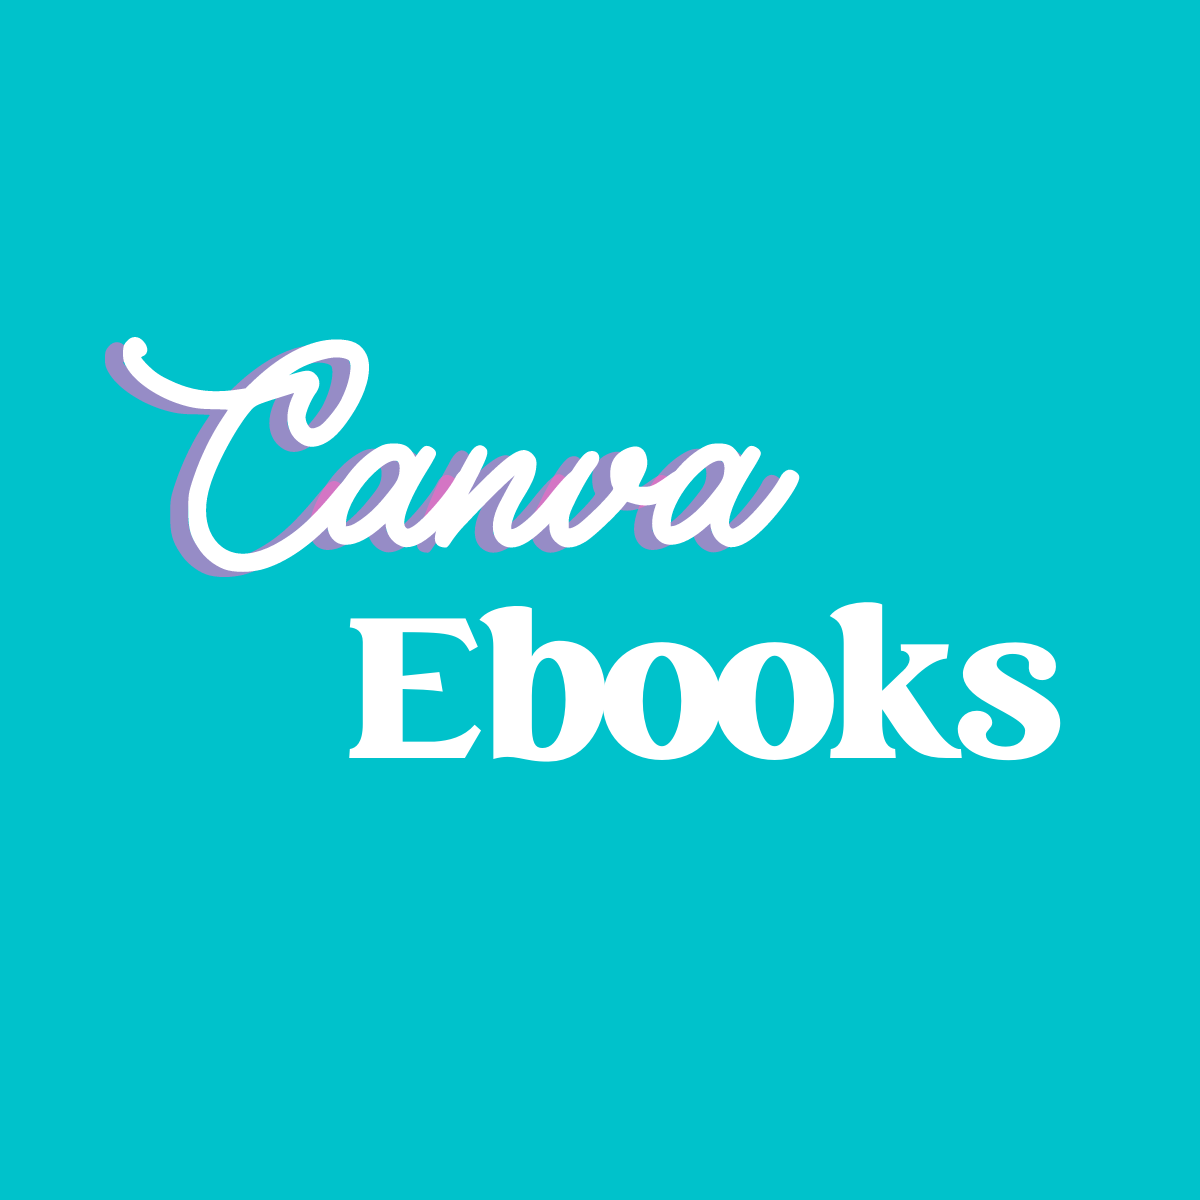 Canva Ebooks